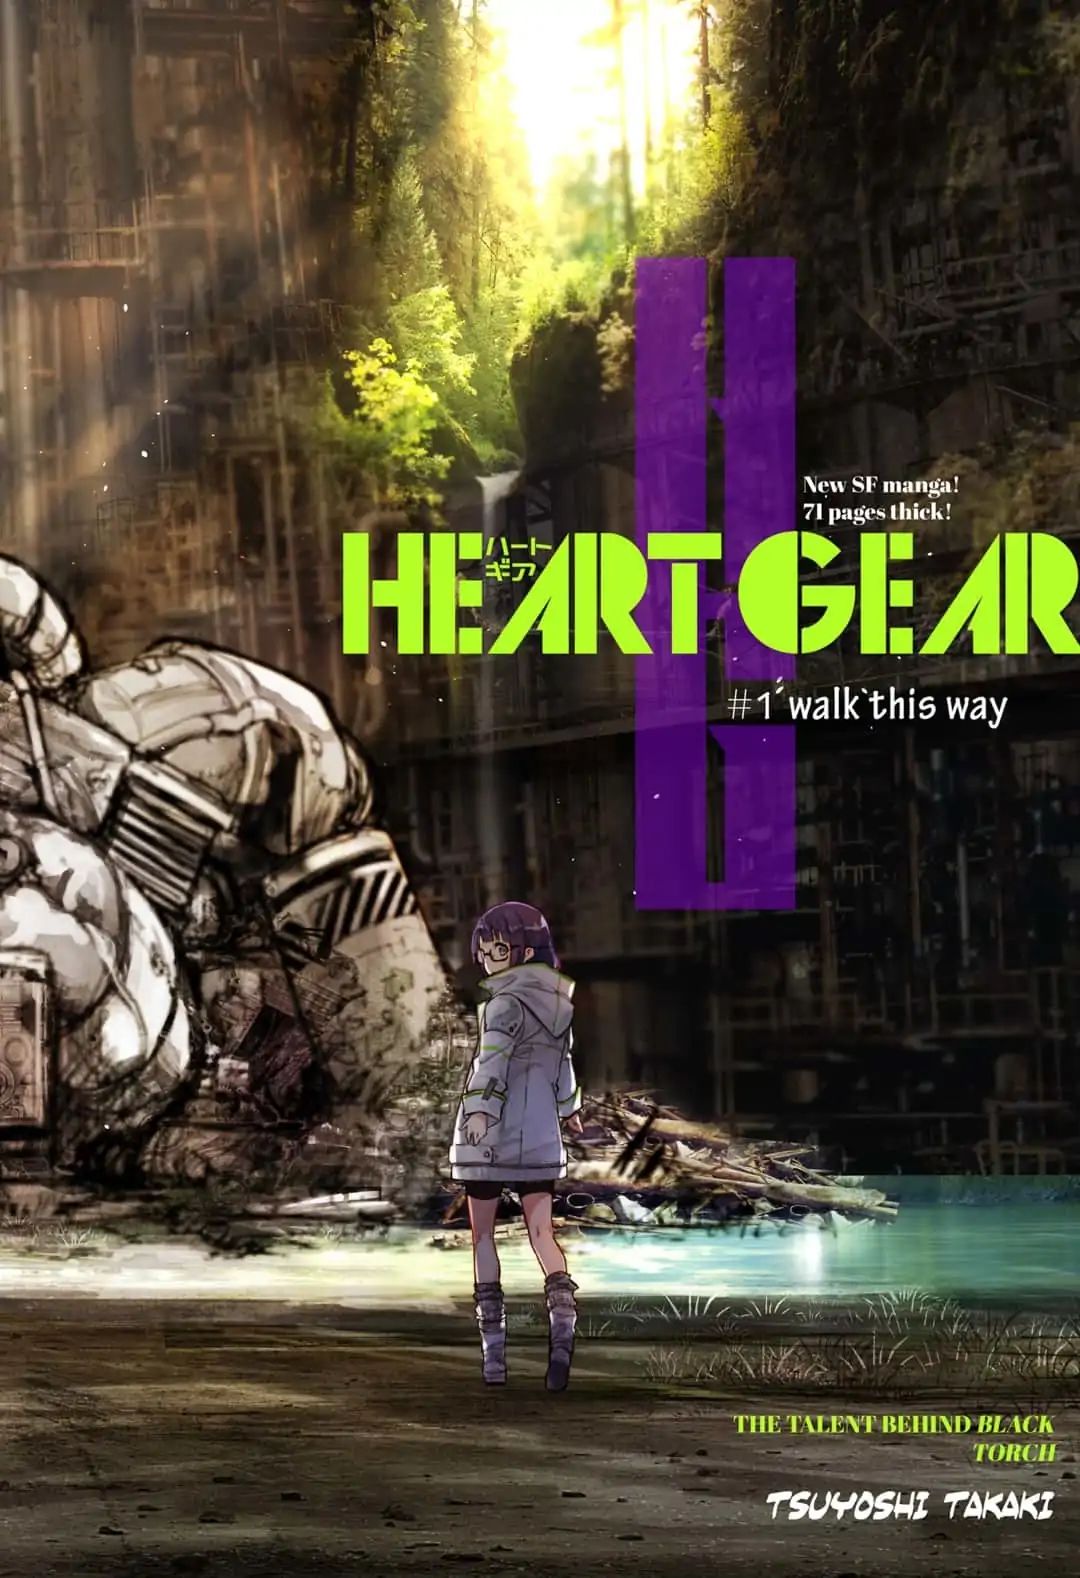 Heart Gear - Page 2